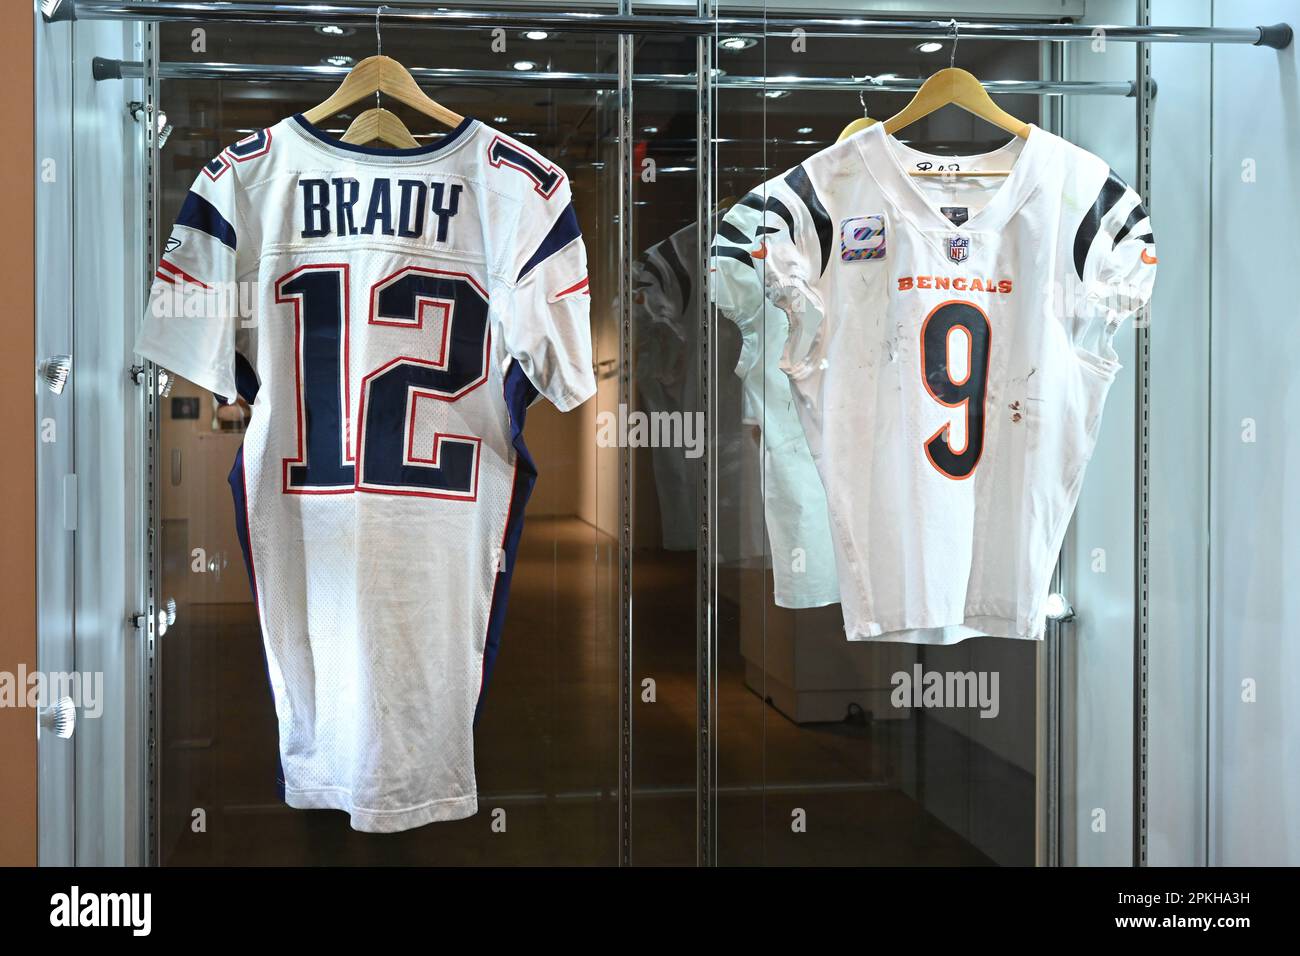 Il gioco Tom Brady 2004 New England Patriots indossava l'uniforme completa e il gioco Joe Burrow indossava la maglia in mostra durante IL VICTORIAM, uno speciale cool in due parti curato Foto Stock